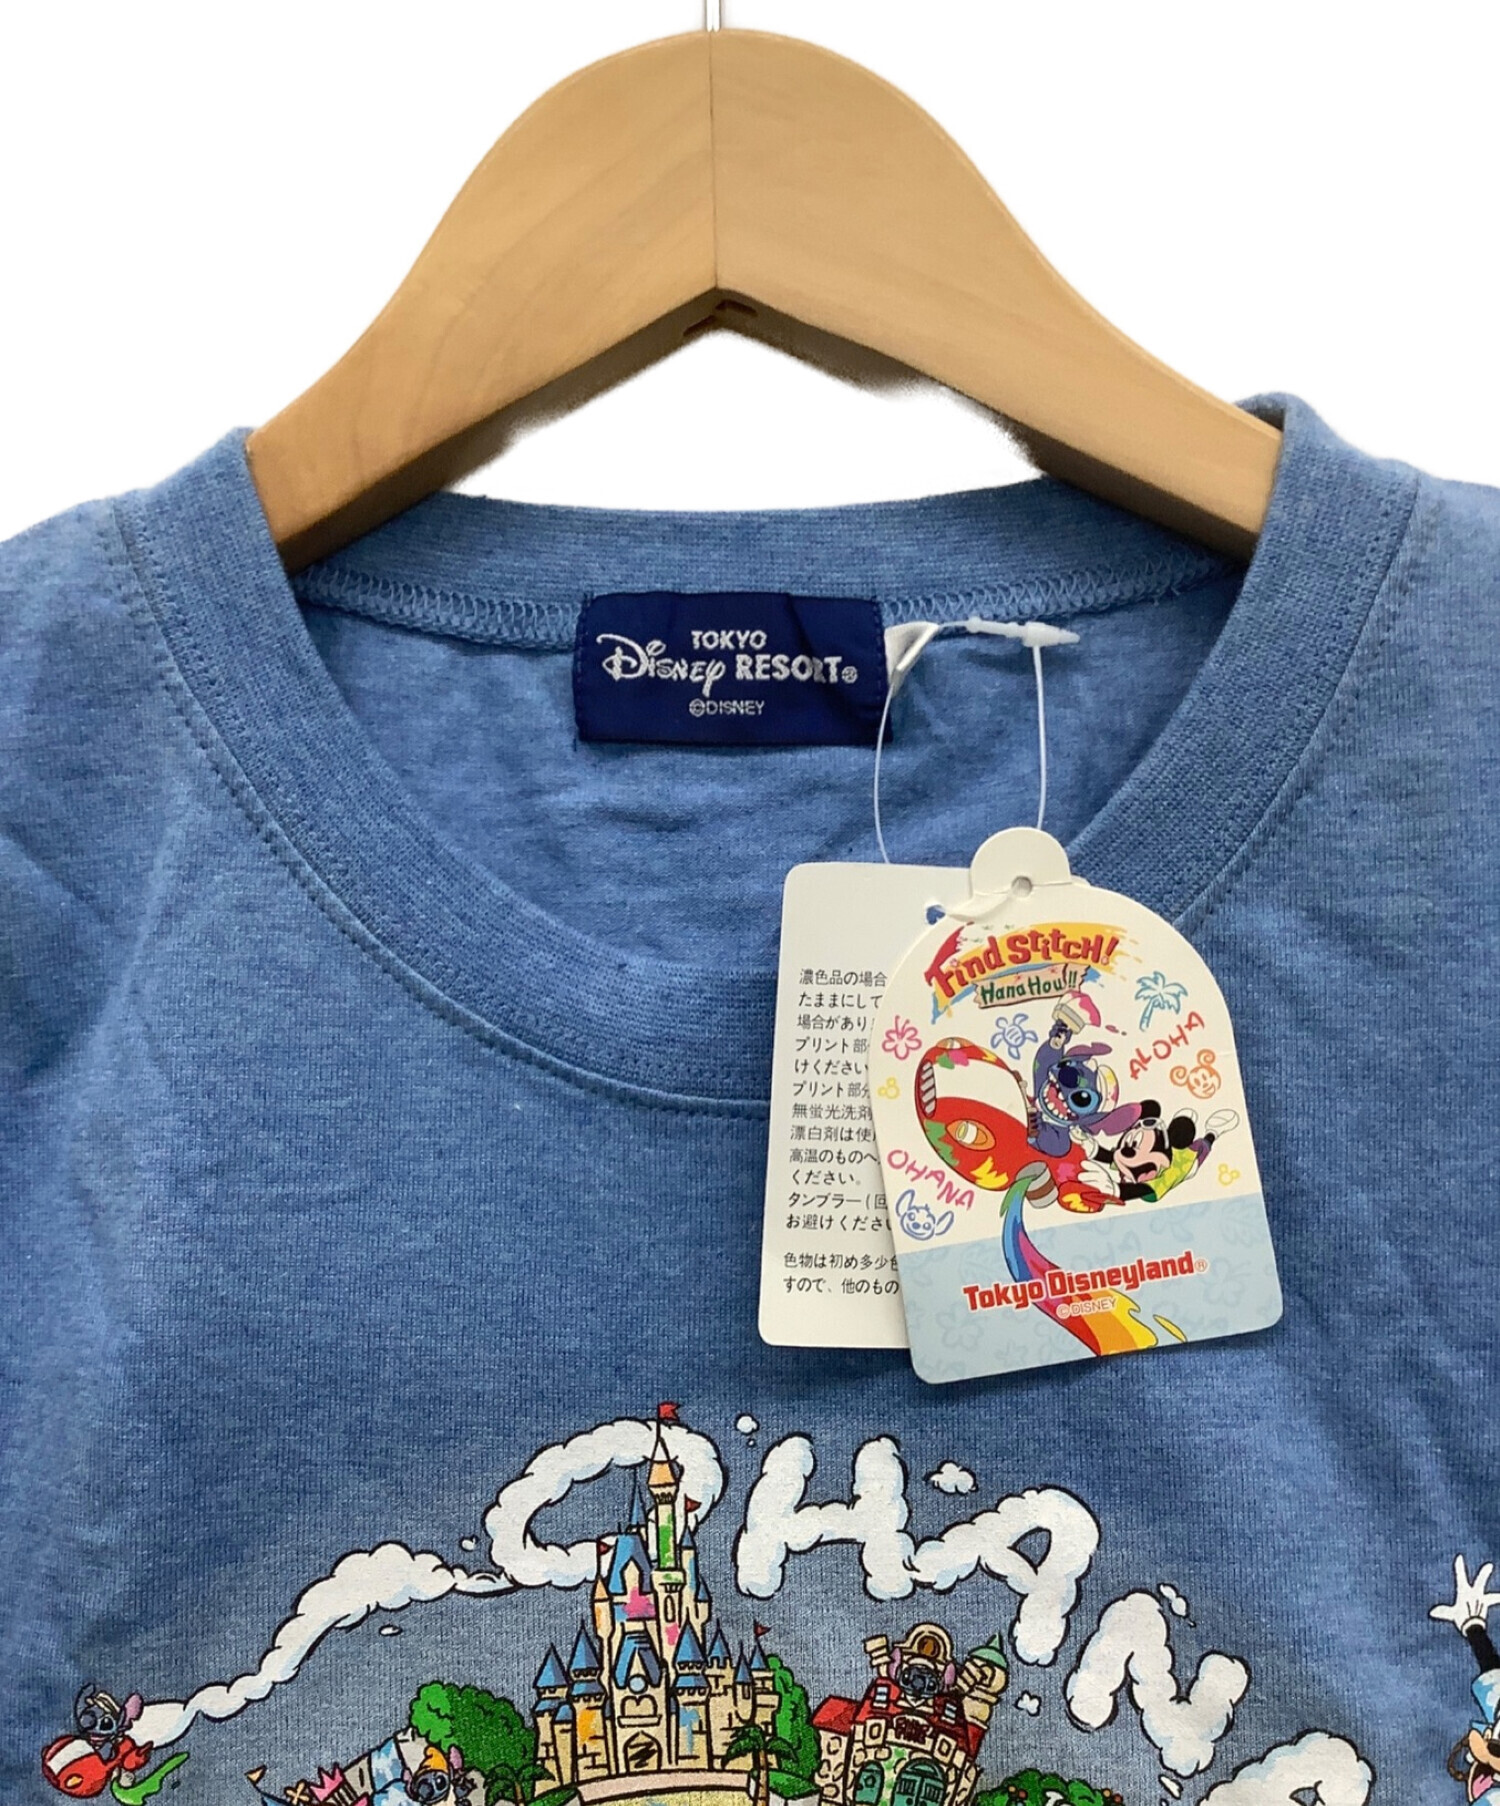 Disney RESORT (ディズニーリゾート) Tシャツ サイズ:S 未使用品